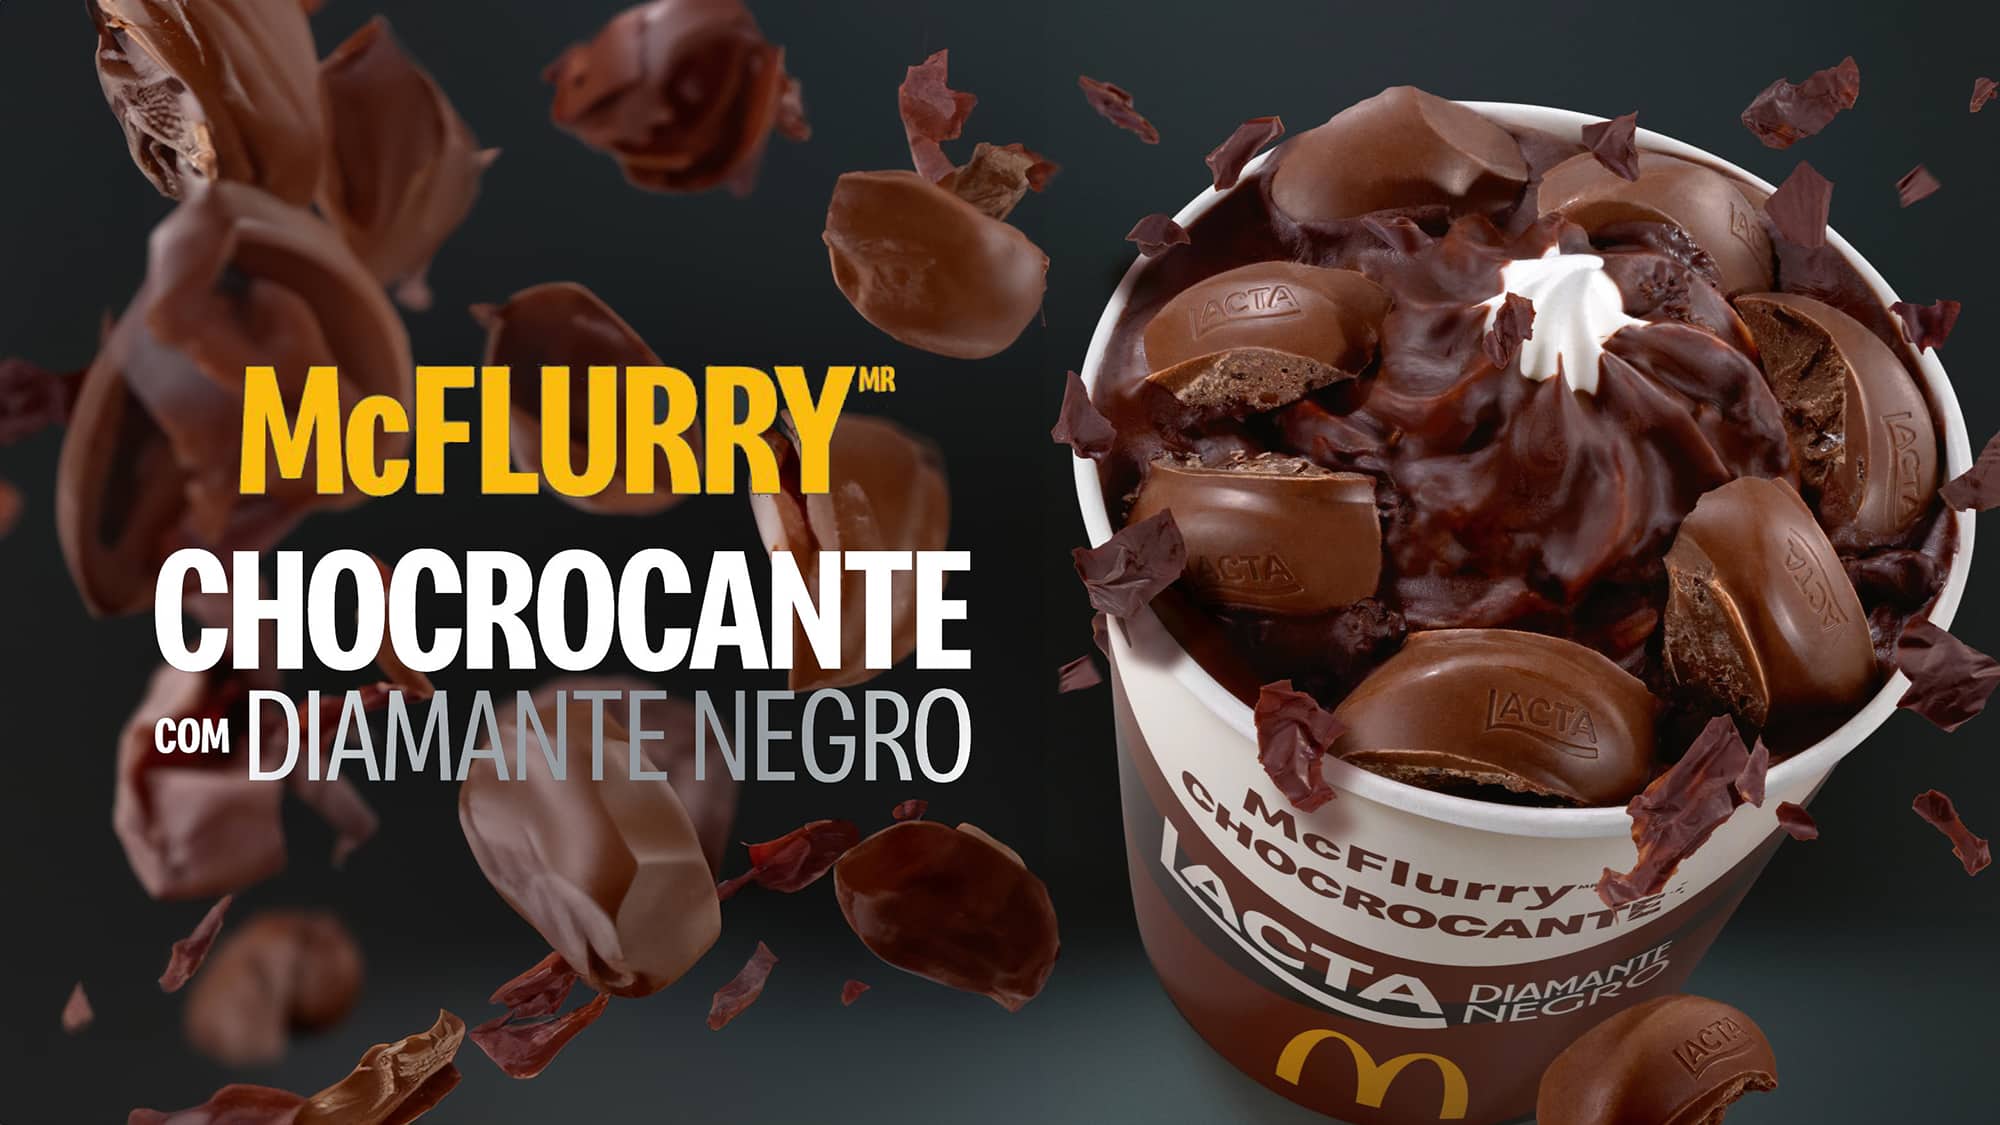 McDonald’s lança McFlurry Chocrocante com Diamante Negro